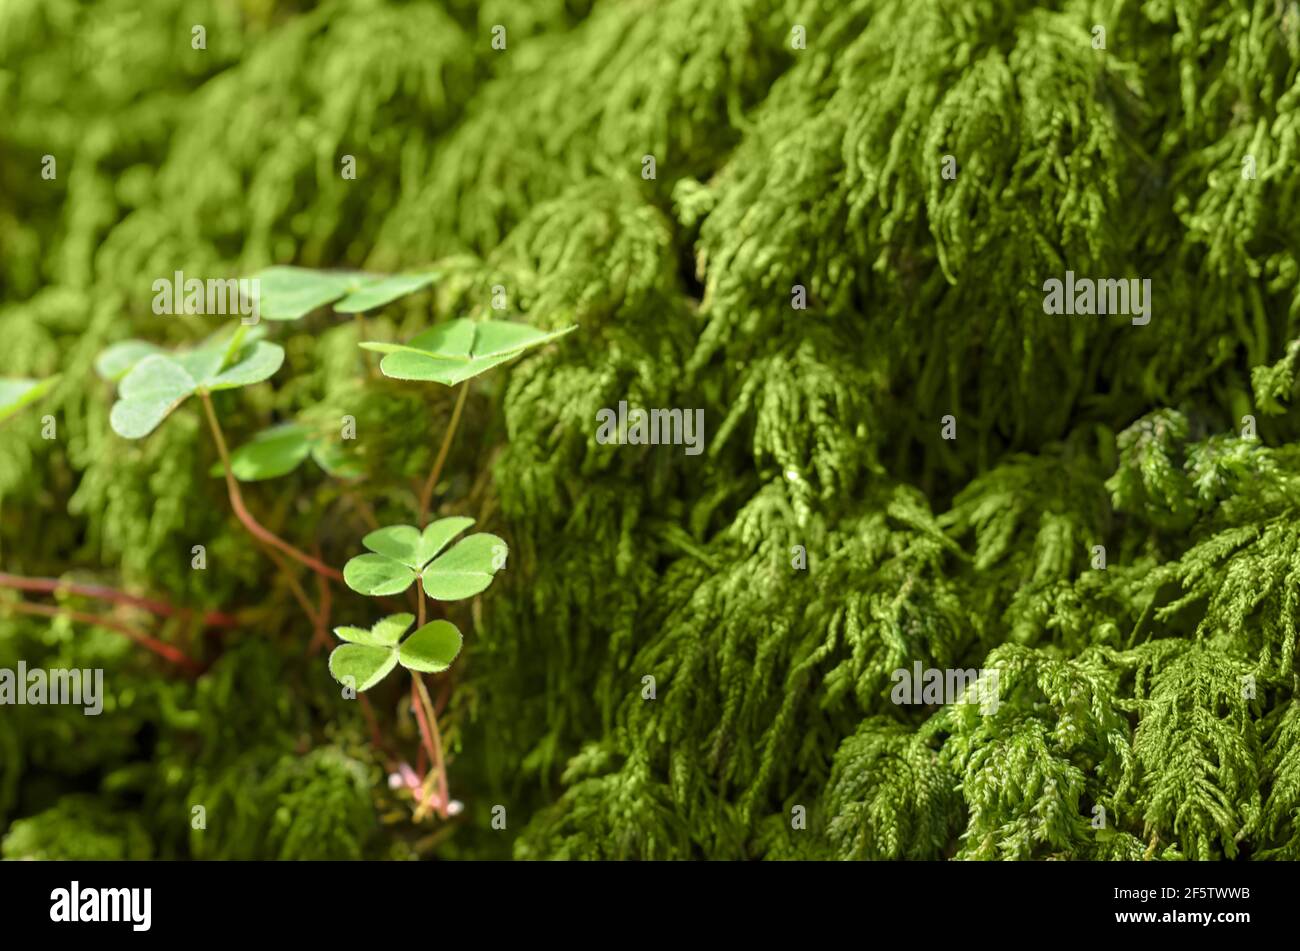 Sorelle commune en bois et mousse verte sur un fond de forêt, un jour d'été ensoleillé. Oxalis acétosella, parfois appelé shamrock. Banque D'Images